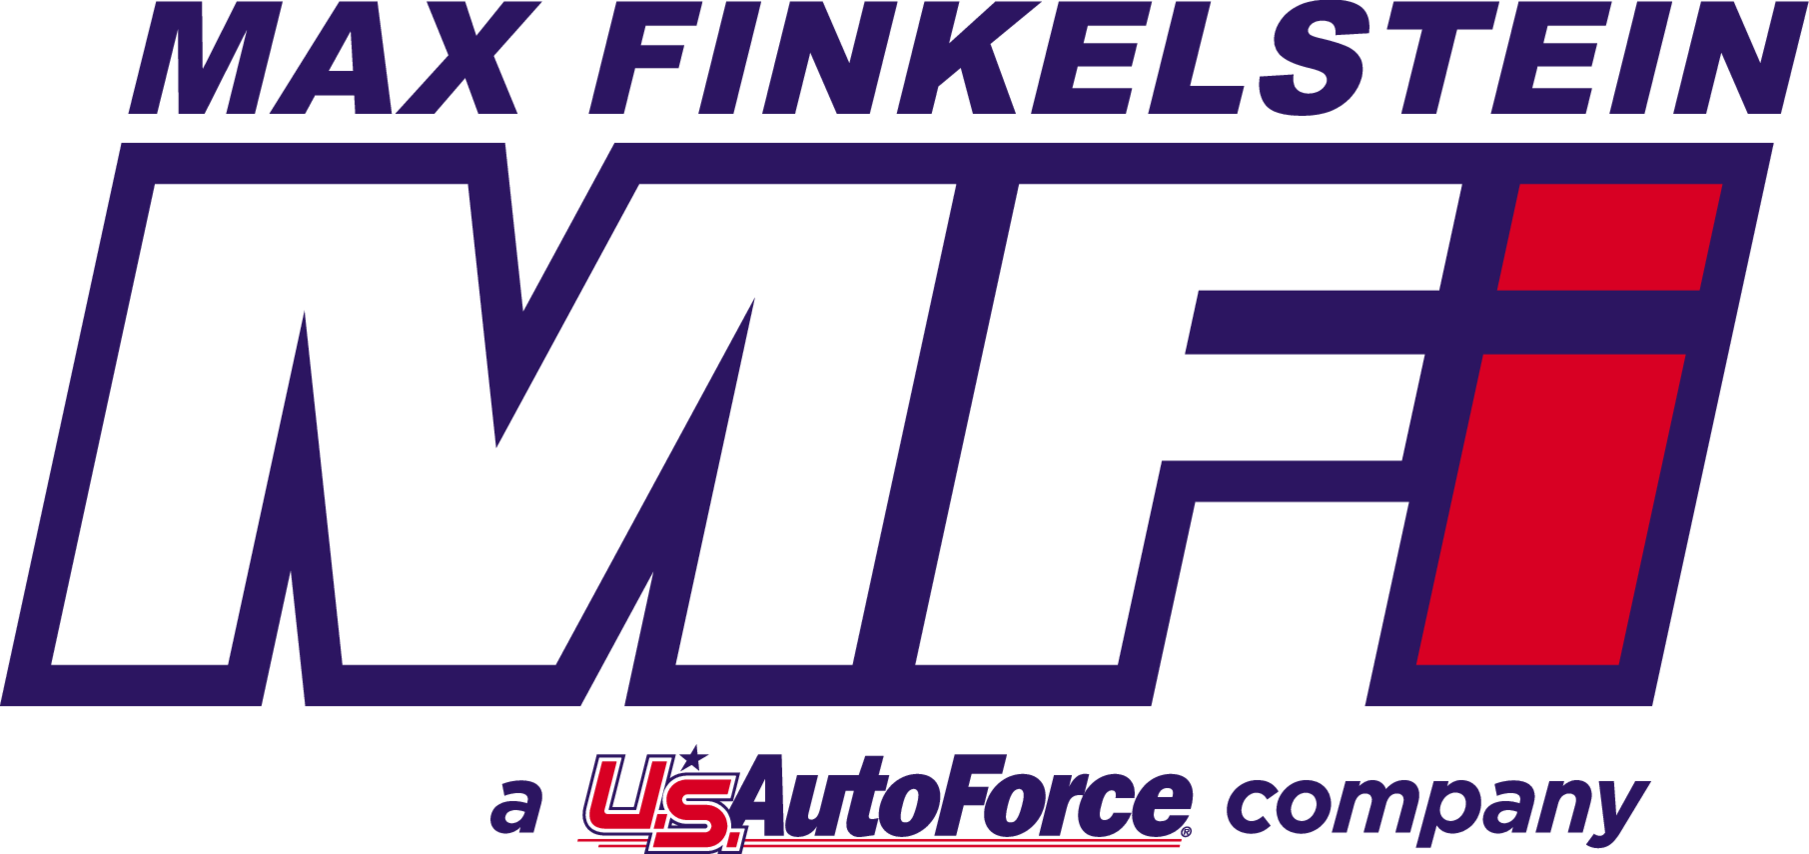 Max Finkelstien - a U.S. Autoforce company